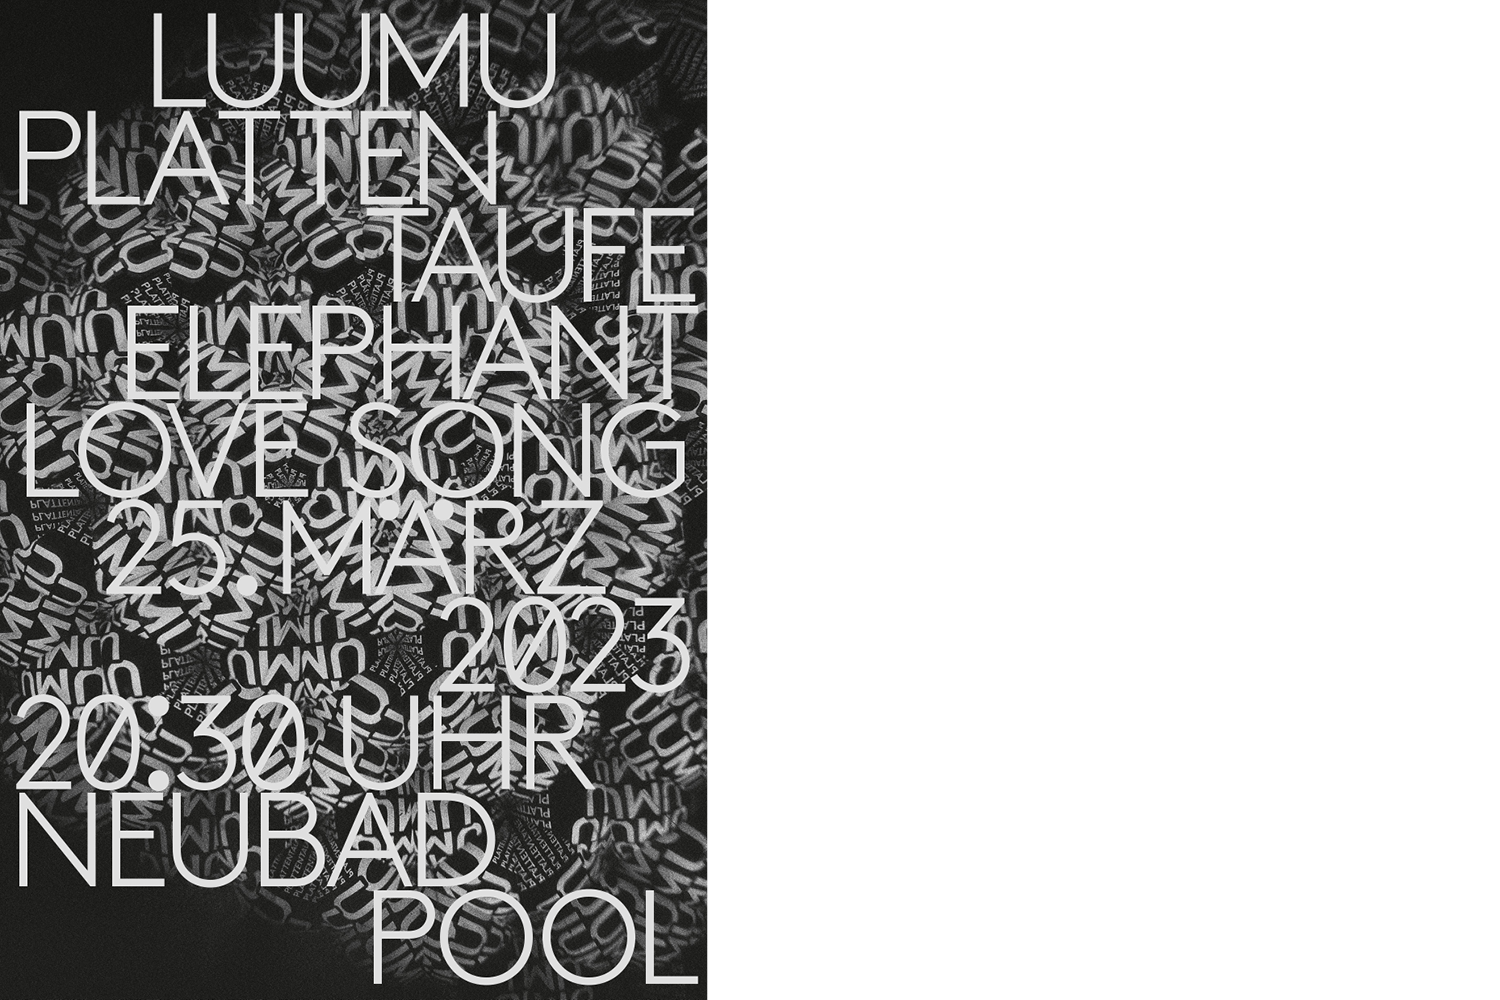 Plakat für die Plattentaufe von Luumu mit grosser, grauer Schrift über einer amorphen Struktur aus Schrift.